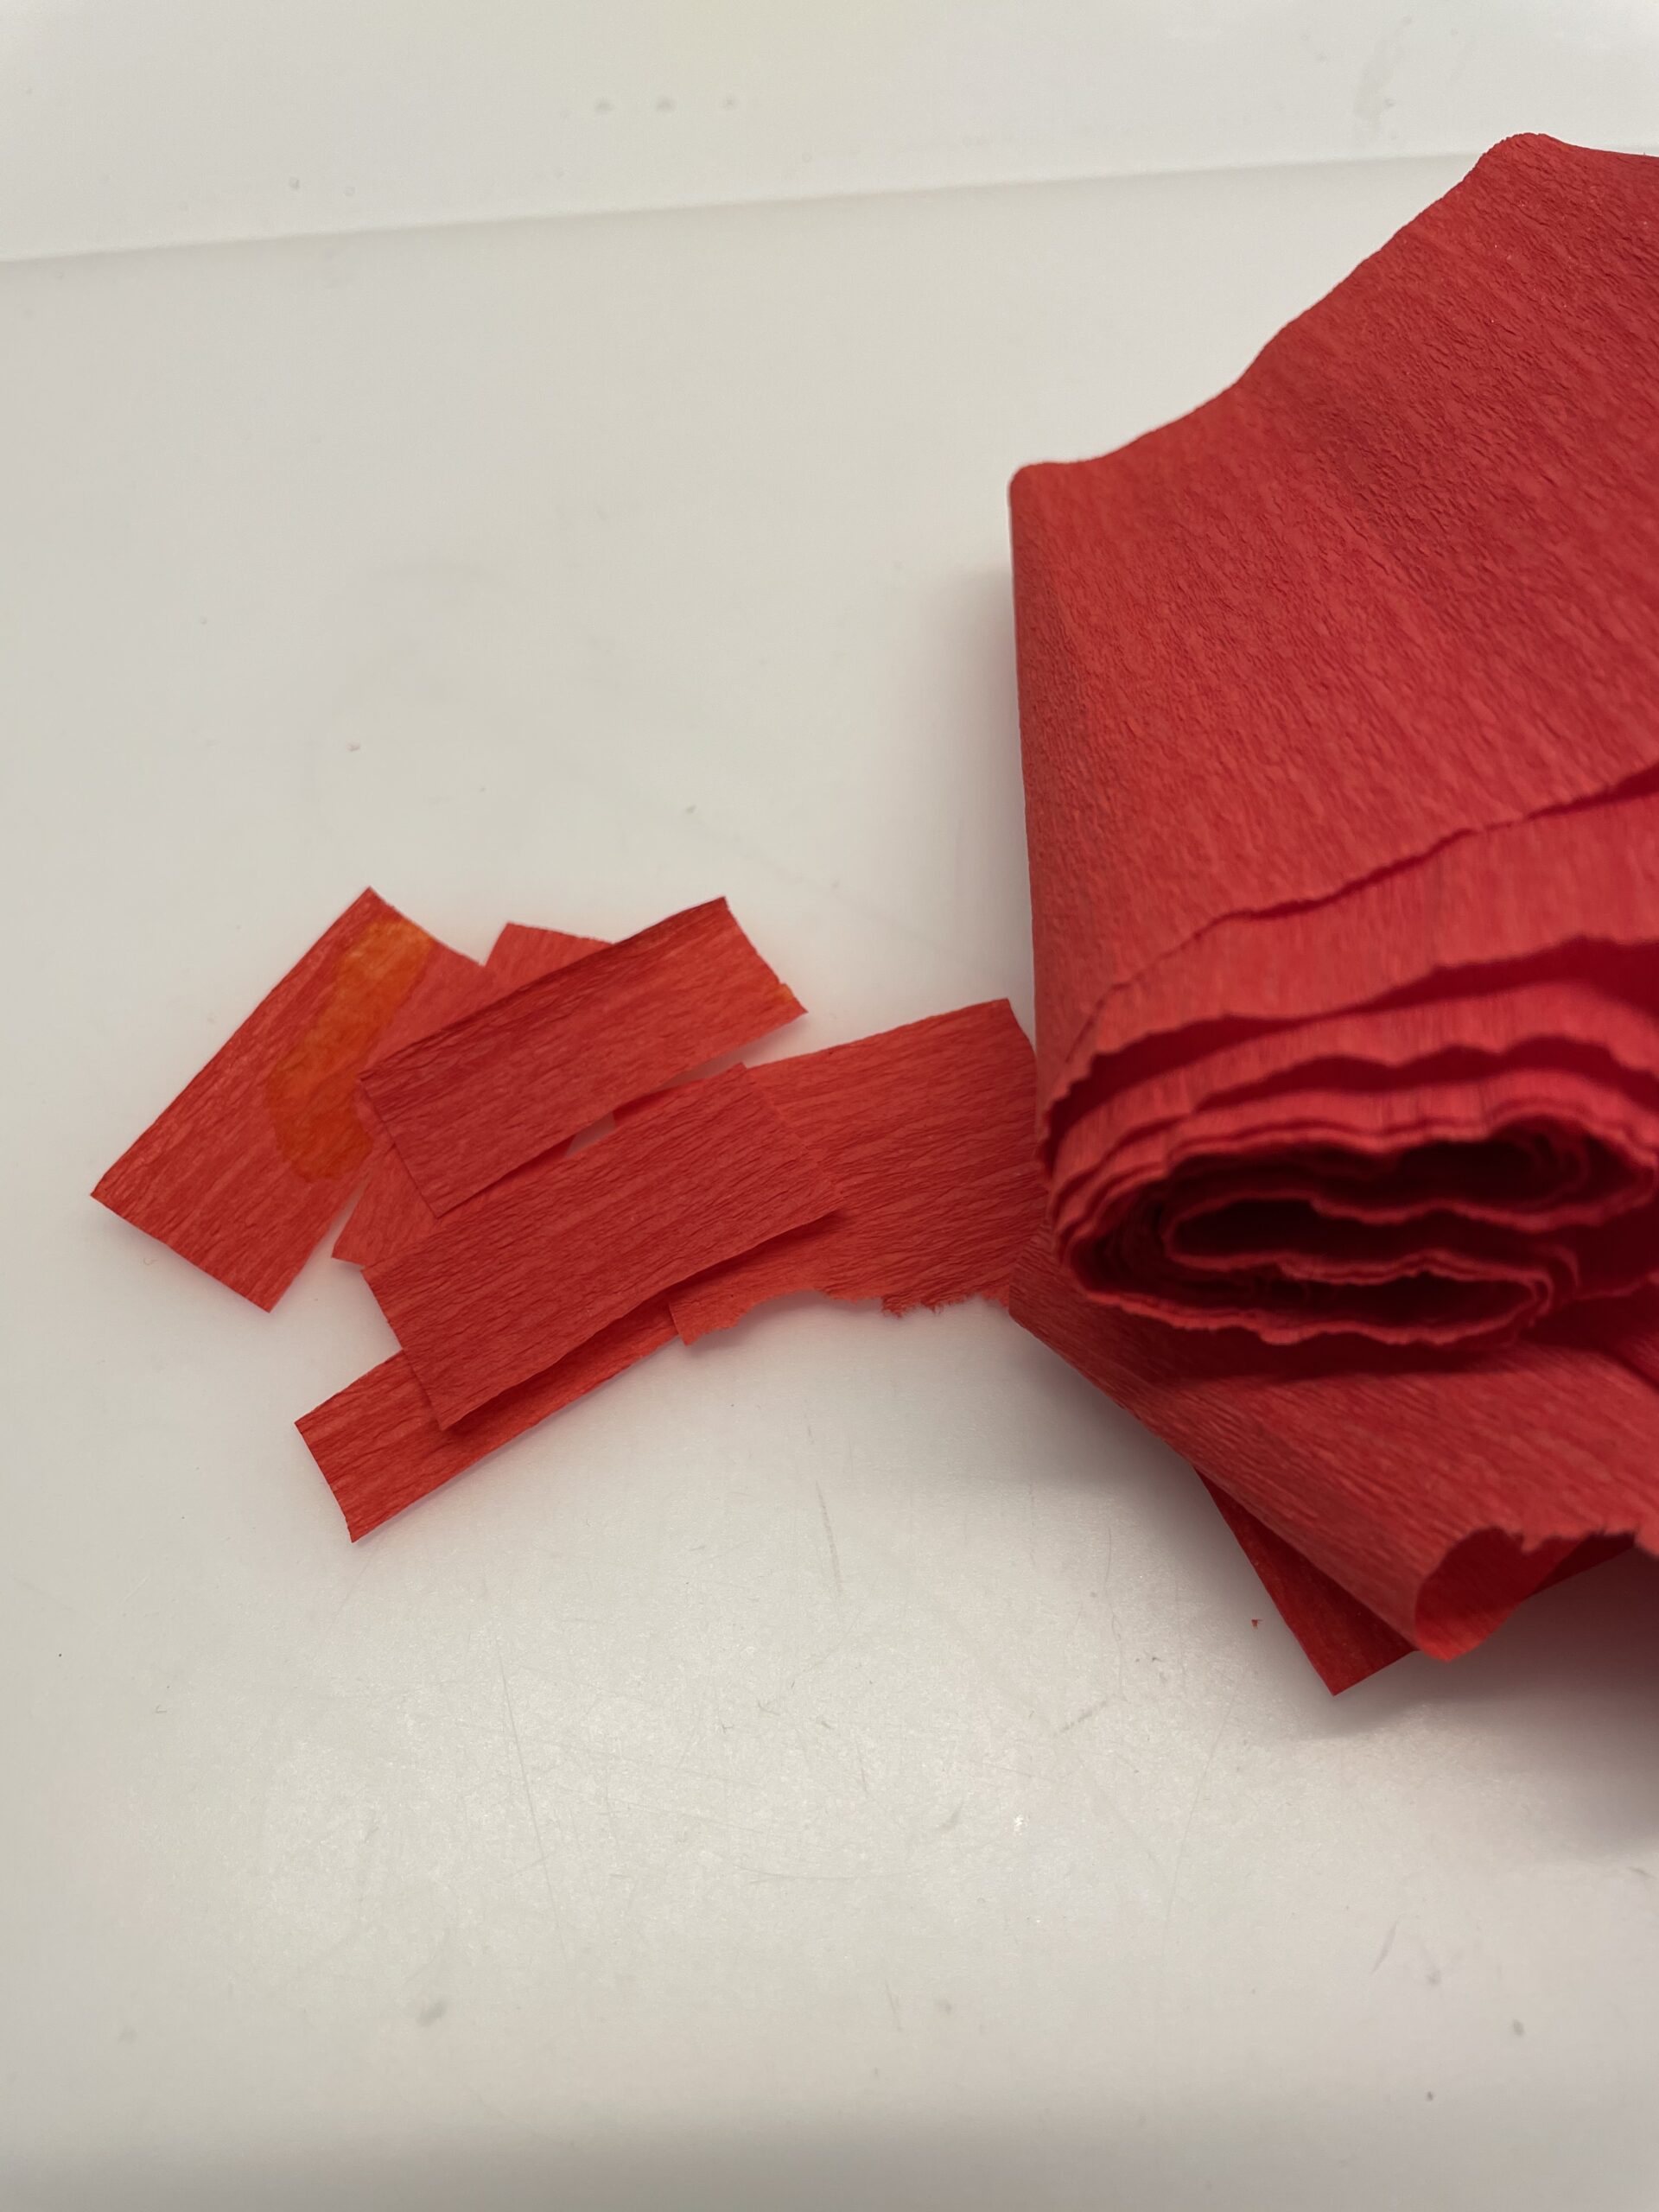 Bild zum Schritt 8 für das Bastel- und DIY-Abenteuer für Kinder: 'Jetzt schneidet ihr euch ein paar Streifen rotes Krepppapier ab.'